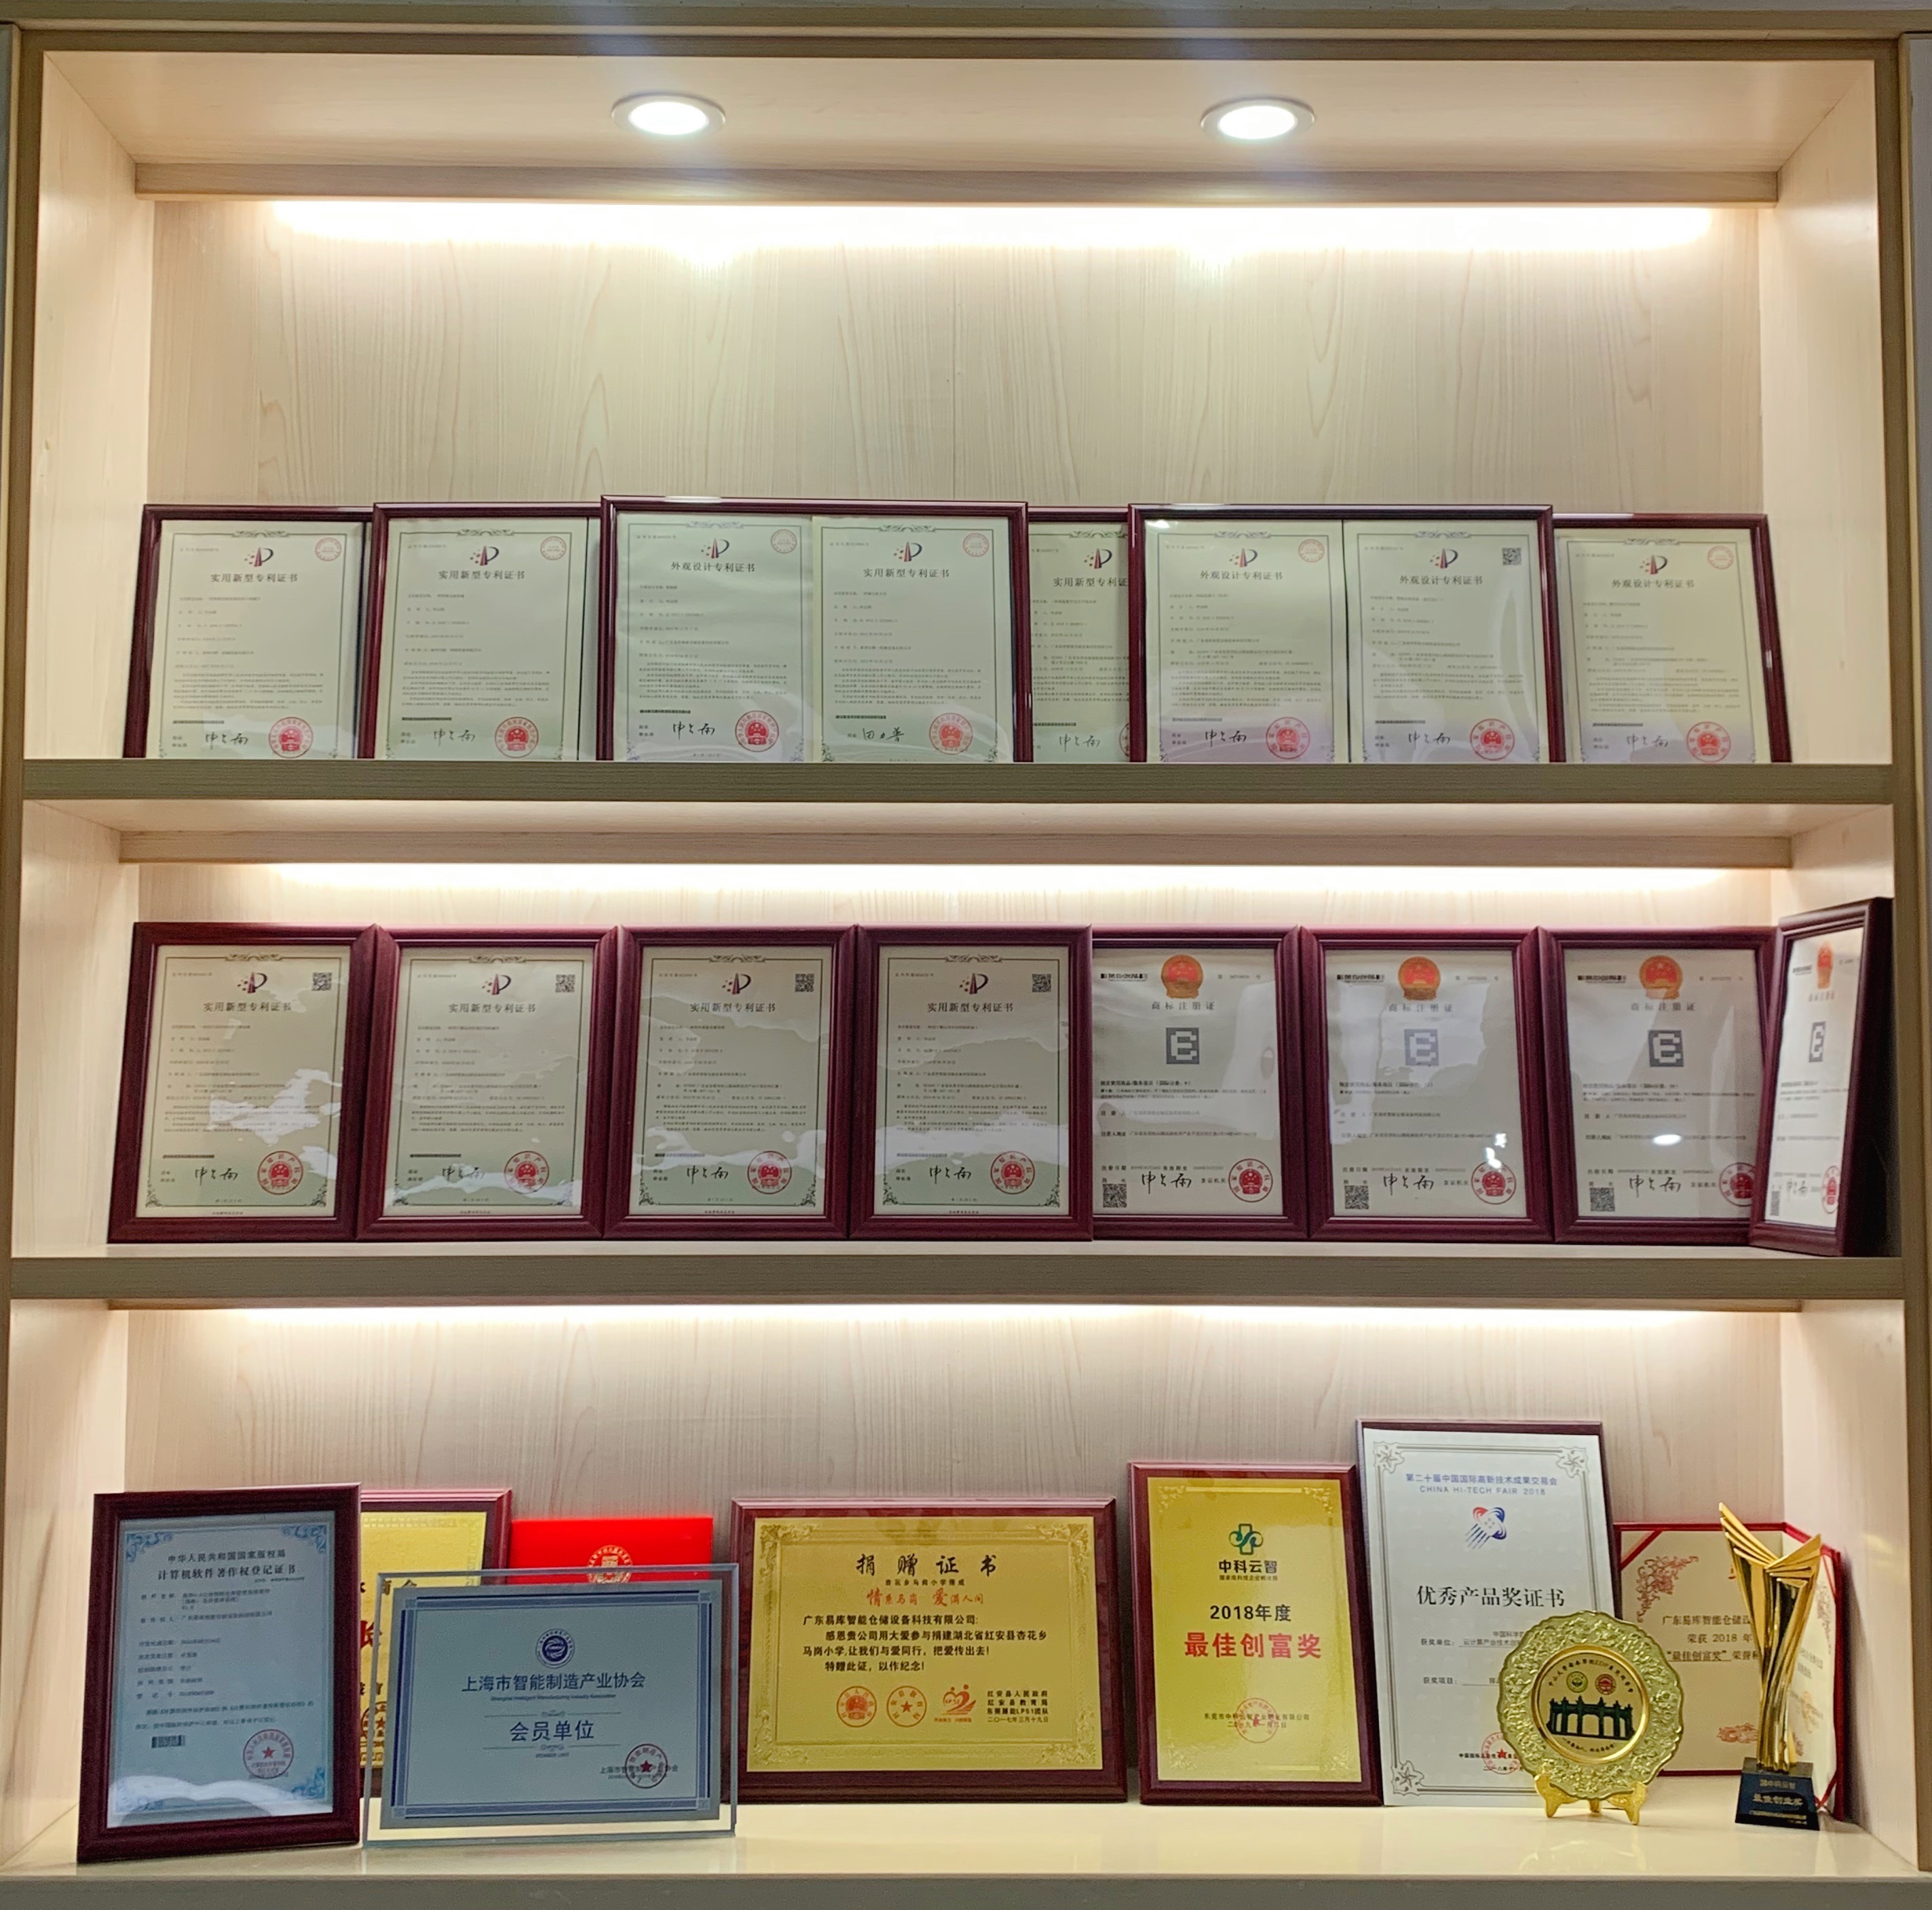 Yiku has more than 40 patents and copyrights